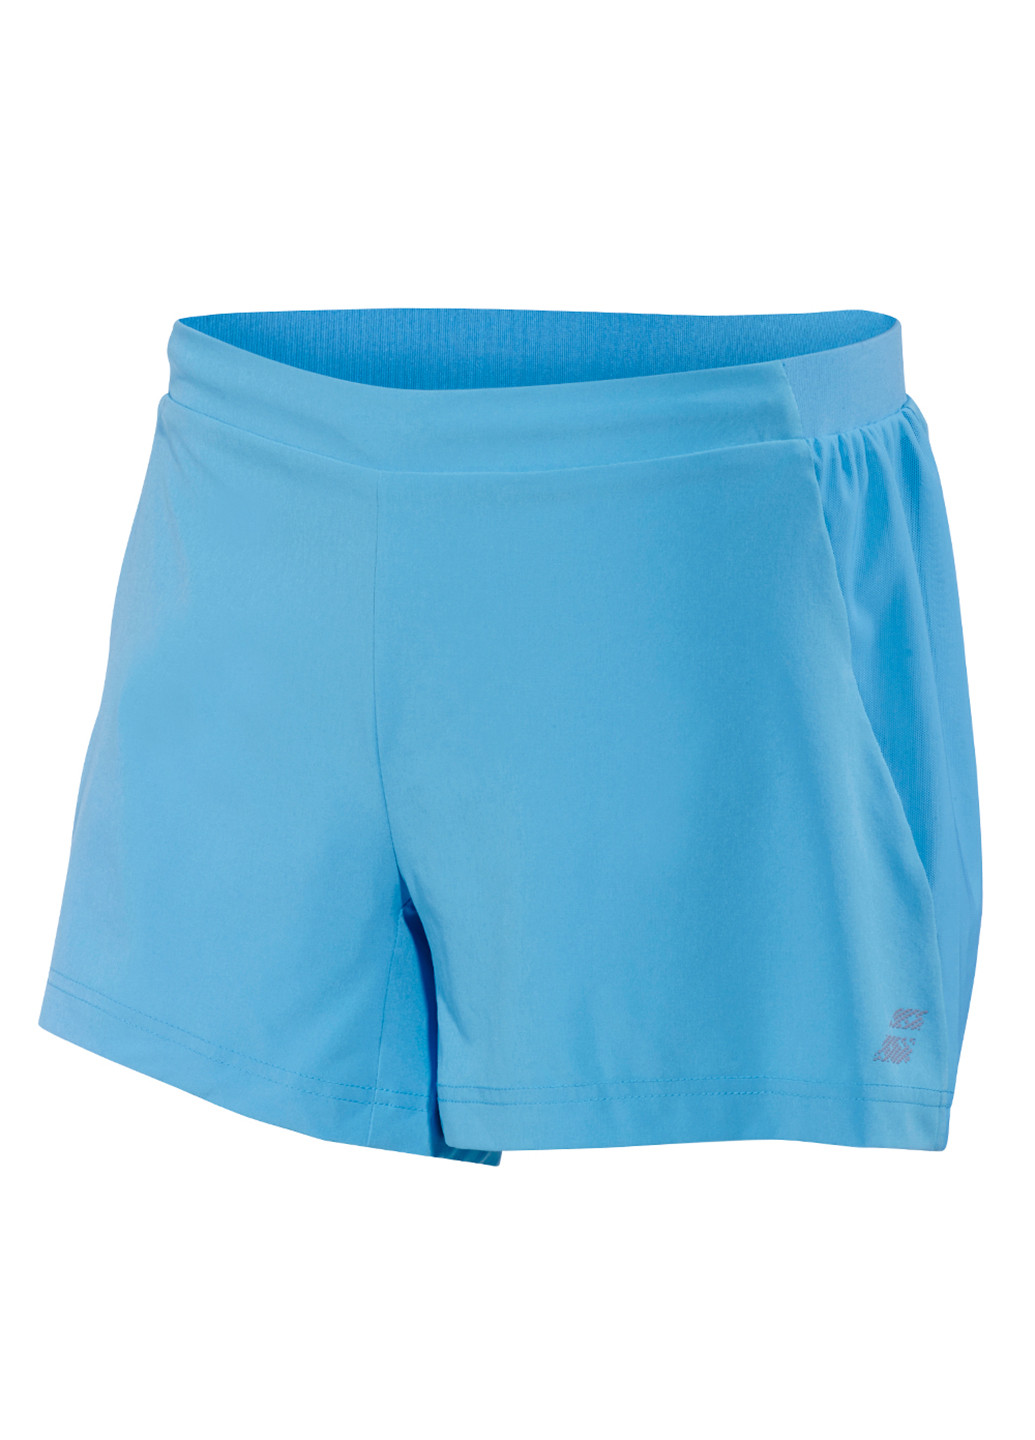 Шорты Babolat PERF SHORT WOMEN средняя талия логотипы голубые спортивные